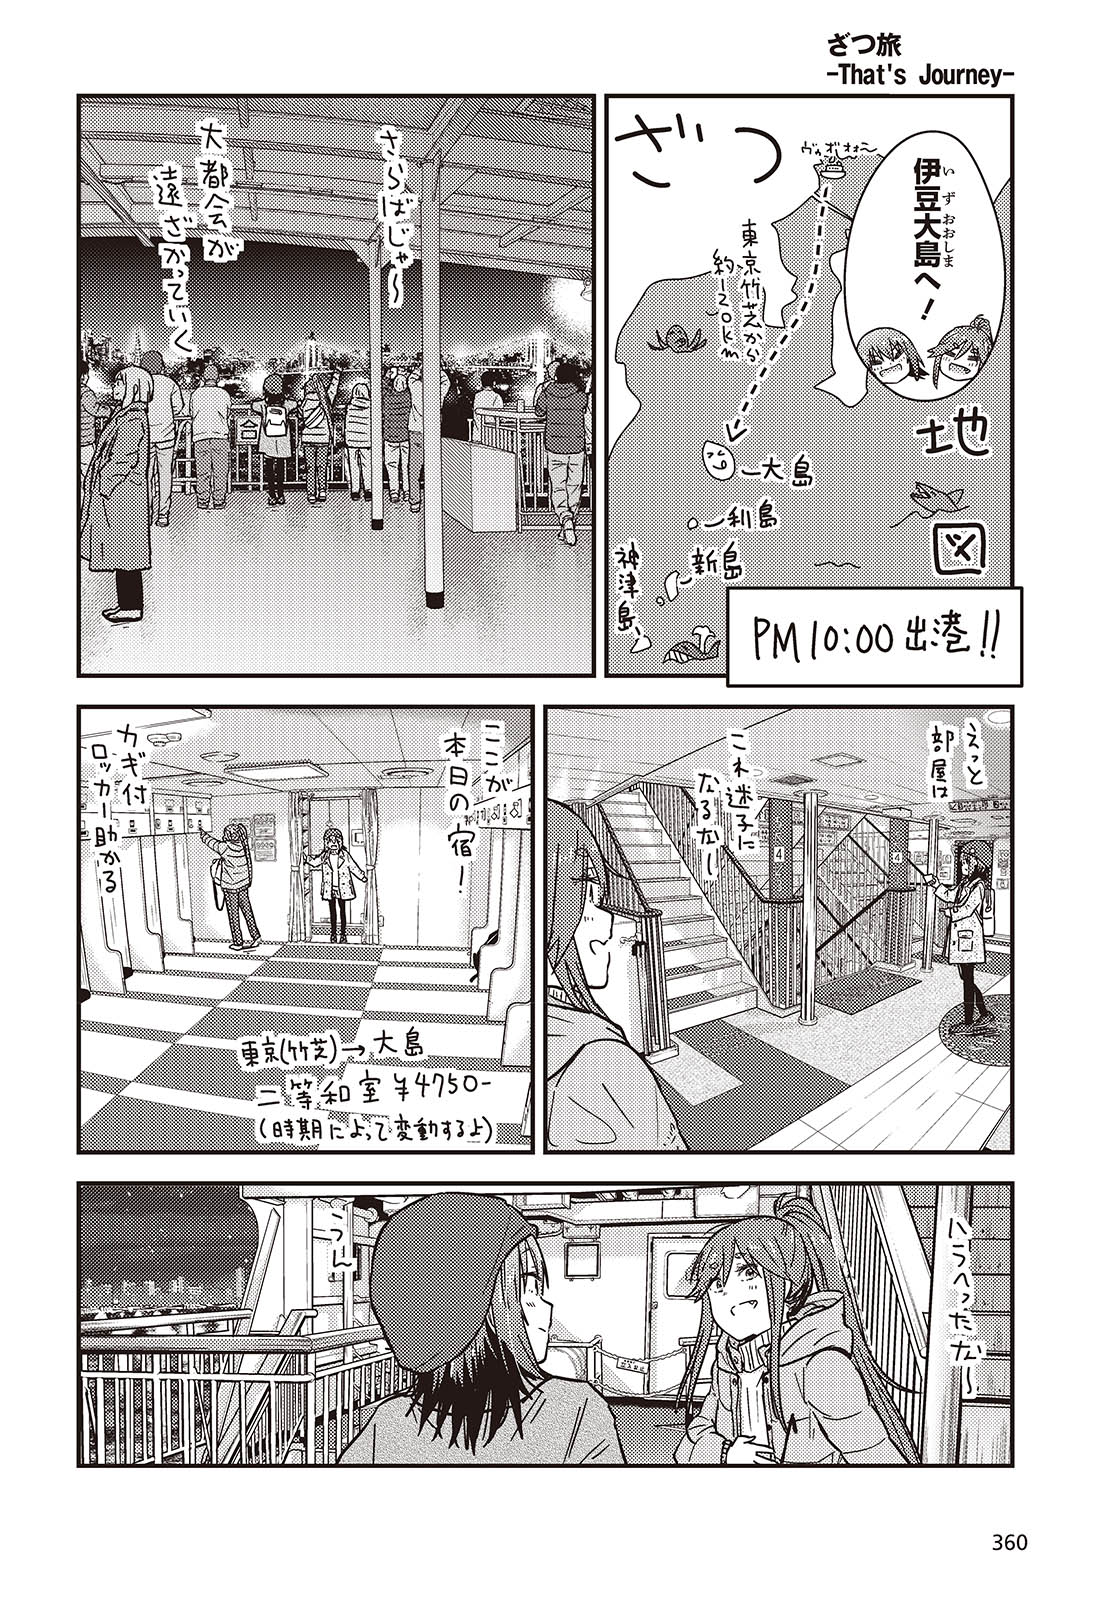 ざつ旅-That’s Journey- 第37話 - Page 4